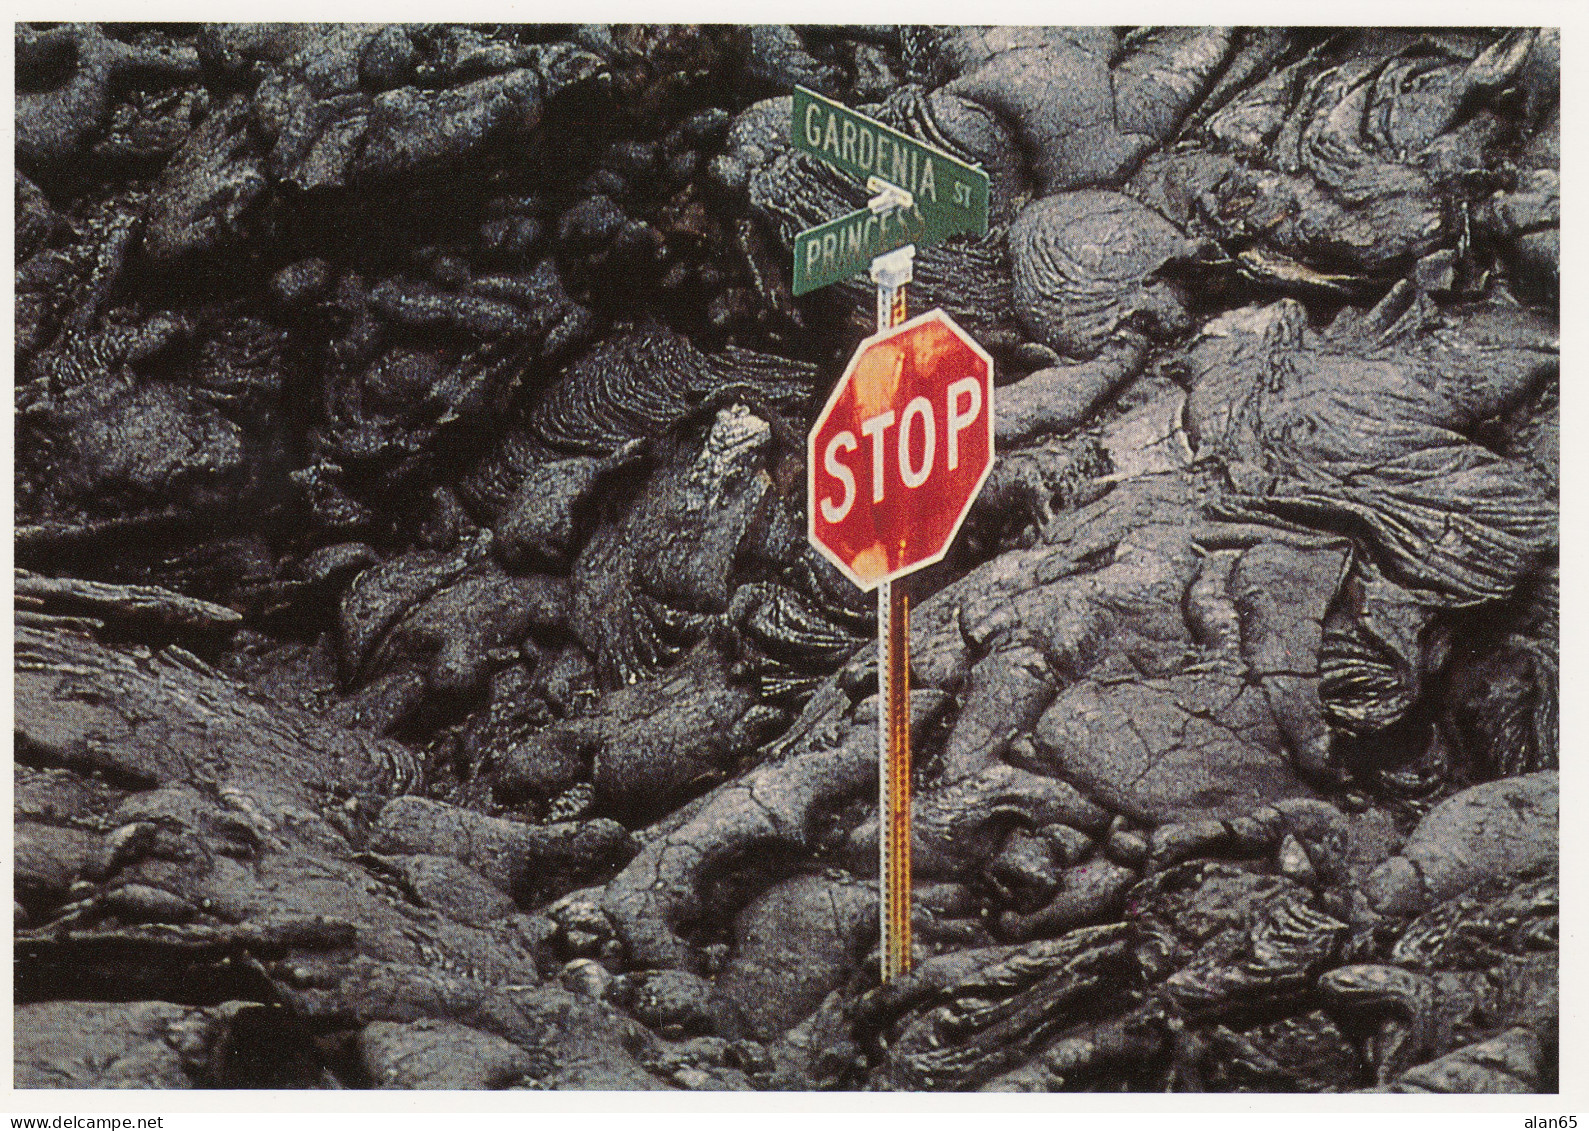 Big Island Of Hawaii, Kilauea Volcano Lava Flow And Street Sign, C1990s/2000s Vintage Postcard - Big Island Of Hawaii